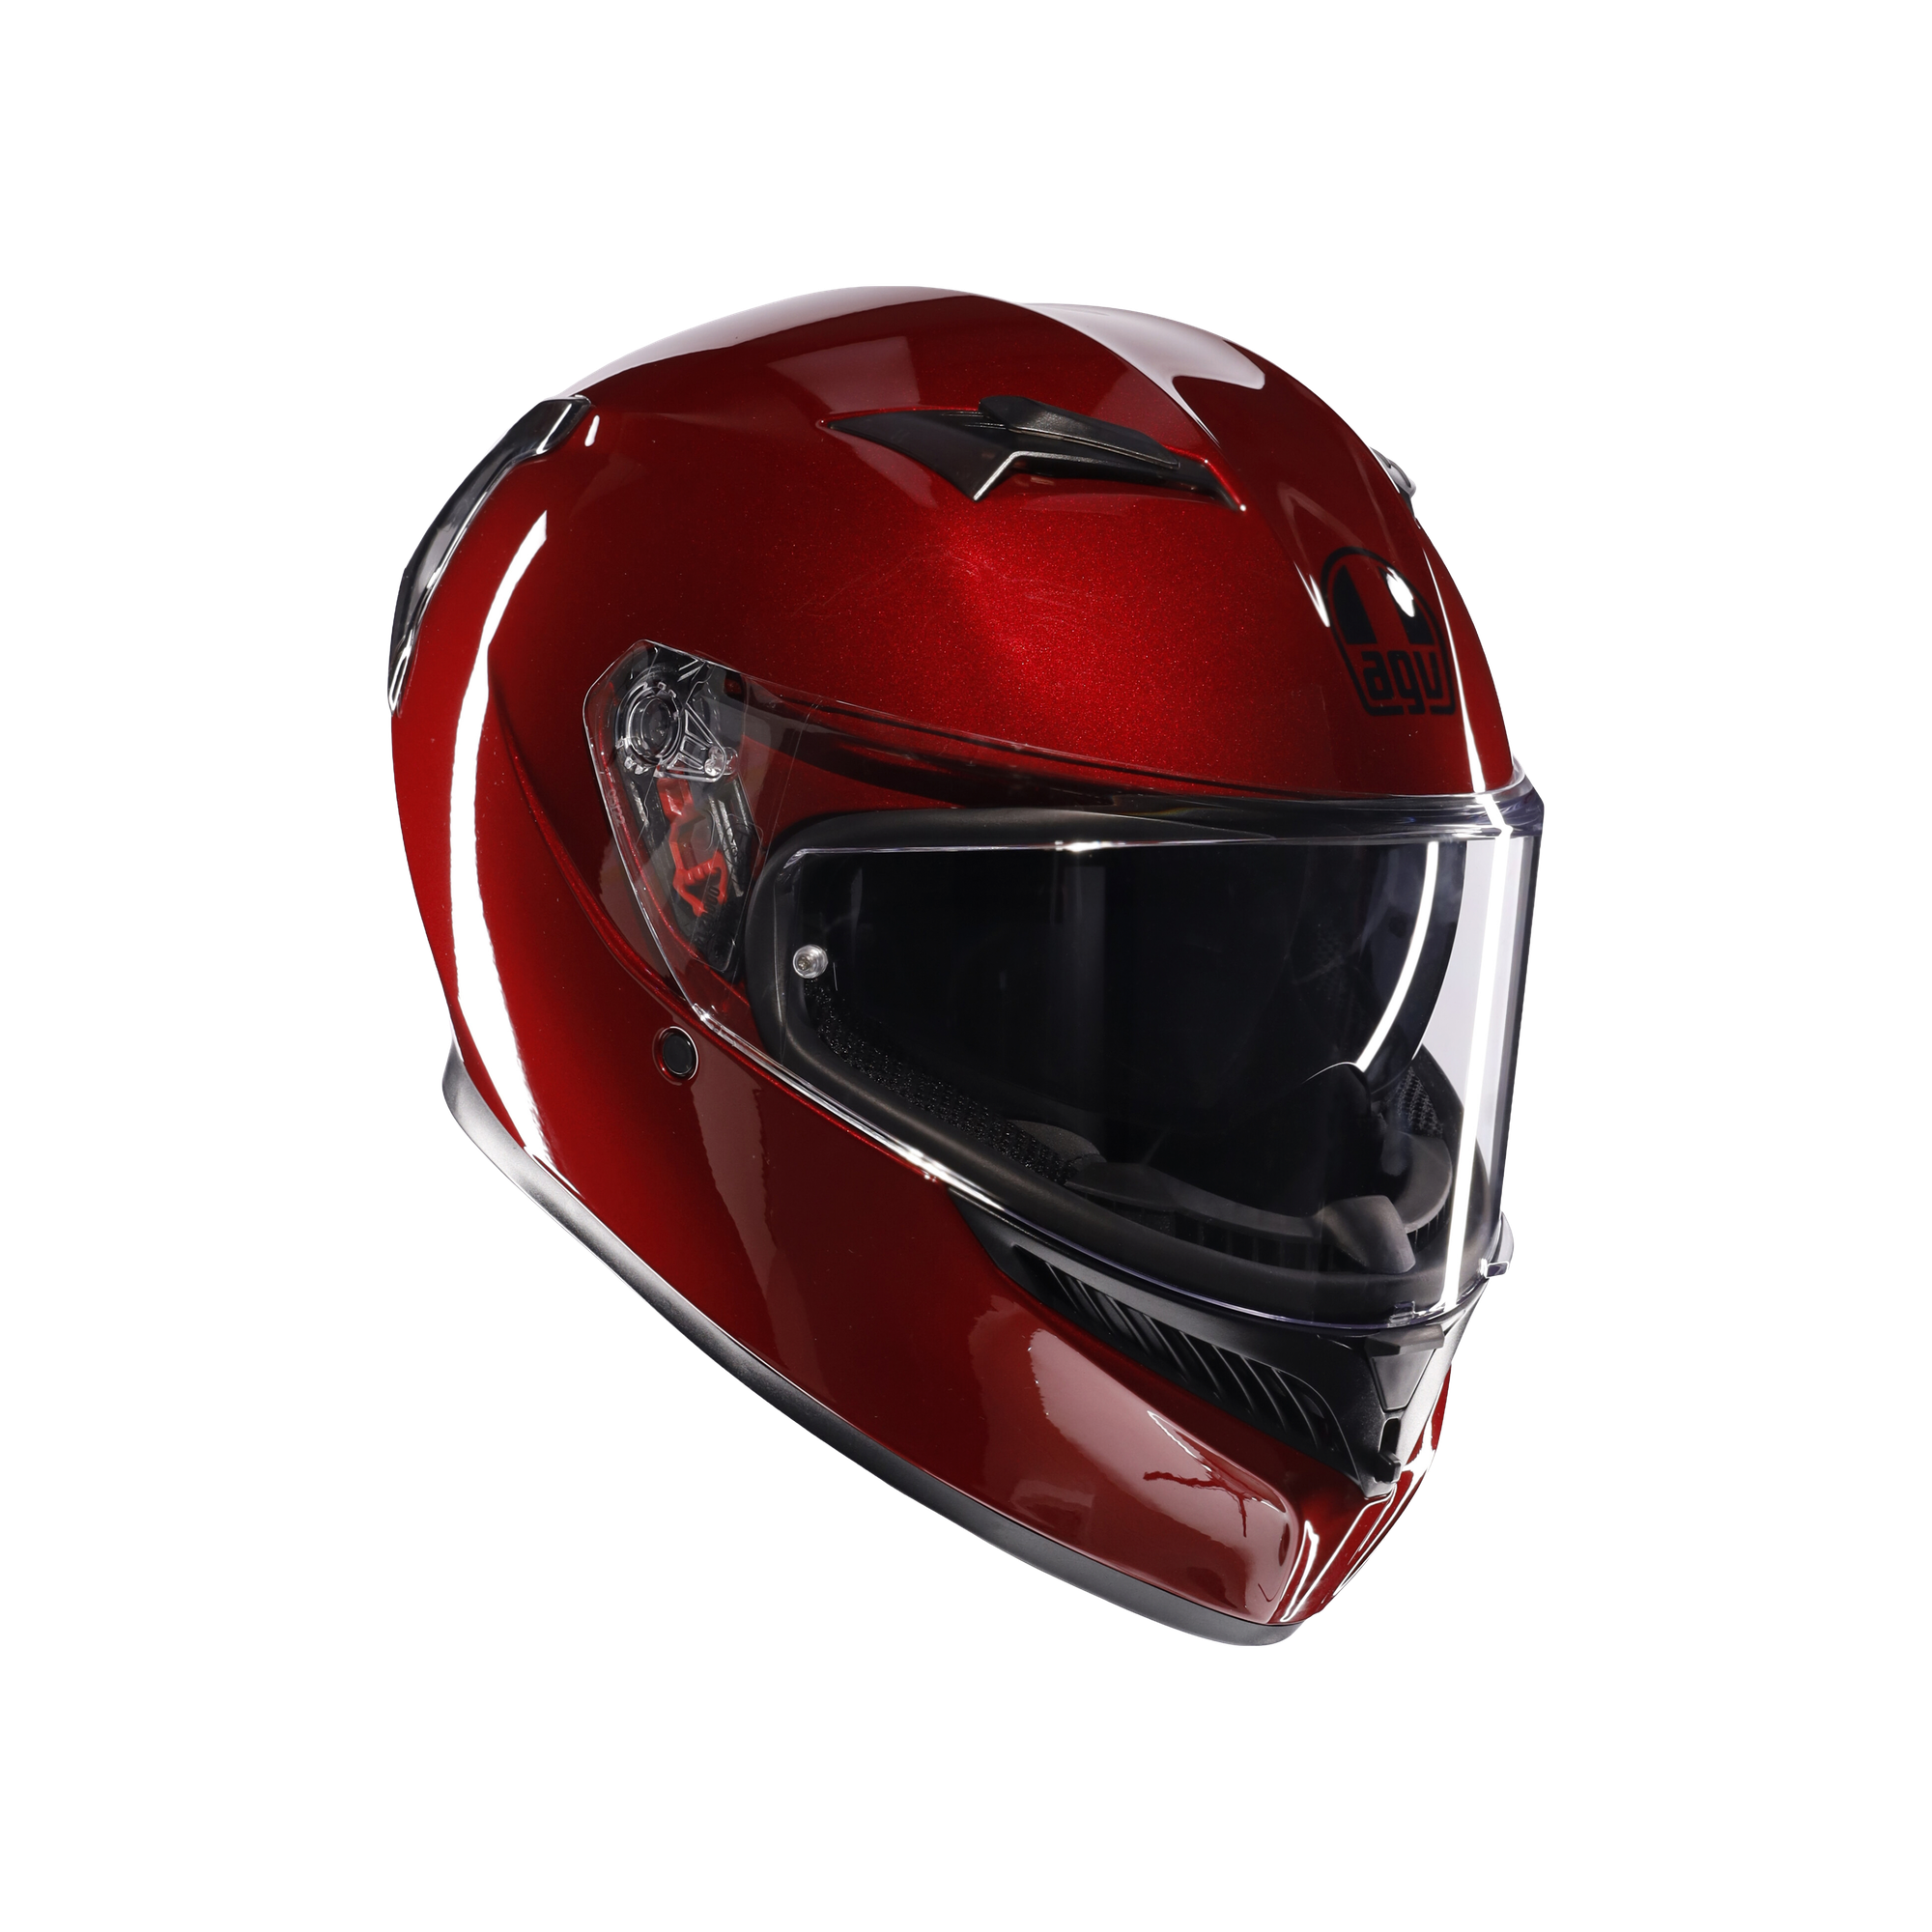 フルフェイスヘルメット | K3 AGV JIST MPLK Asian Fit 016-MONO COMPETIZIONE RED SG認証